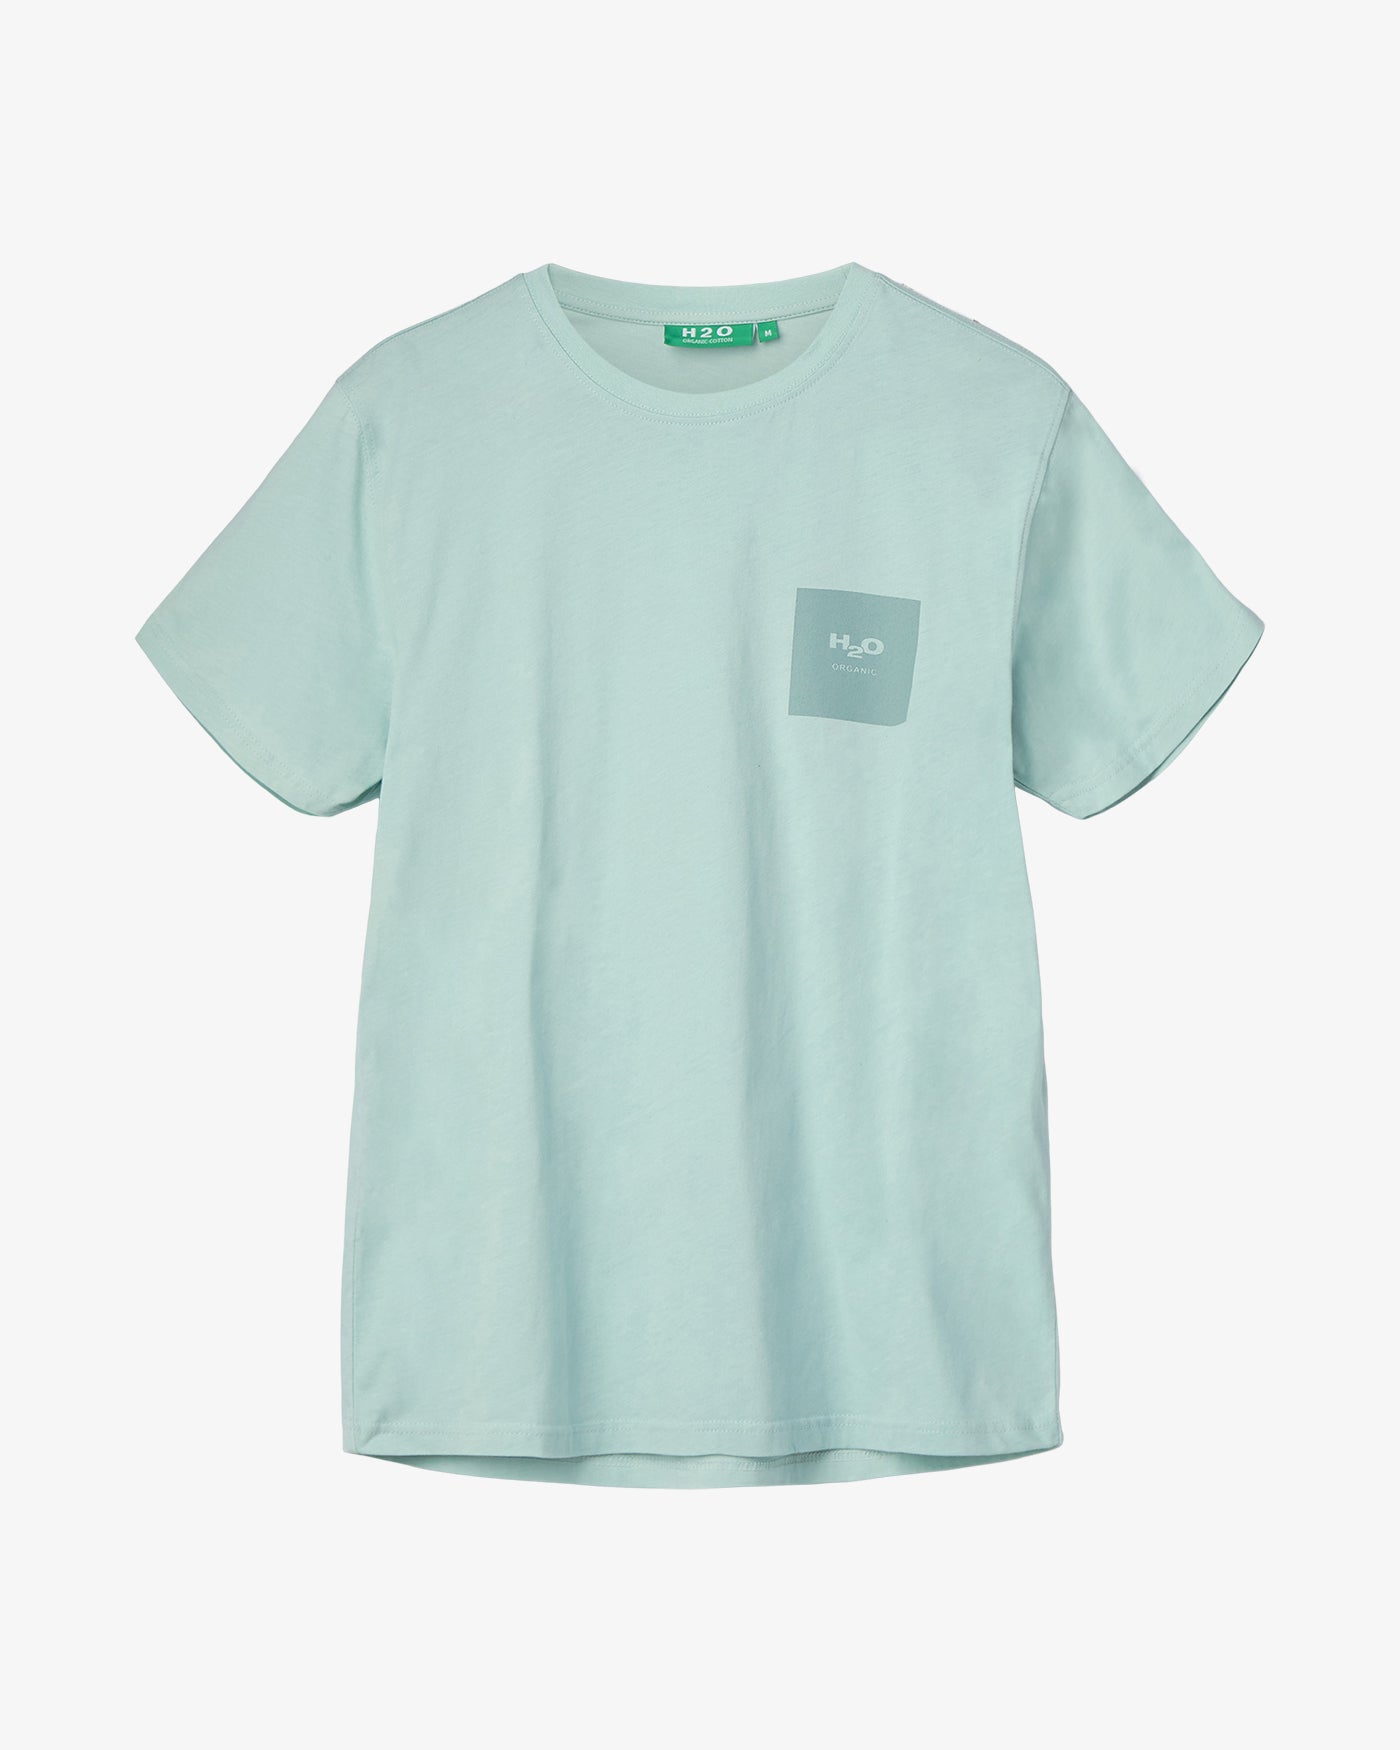 Lyø Organic T-shirt - Baby Green